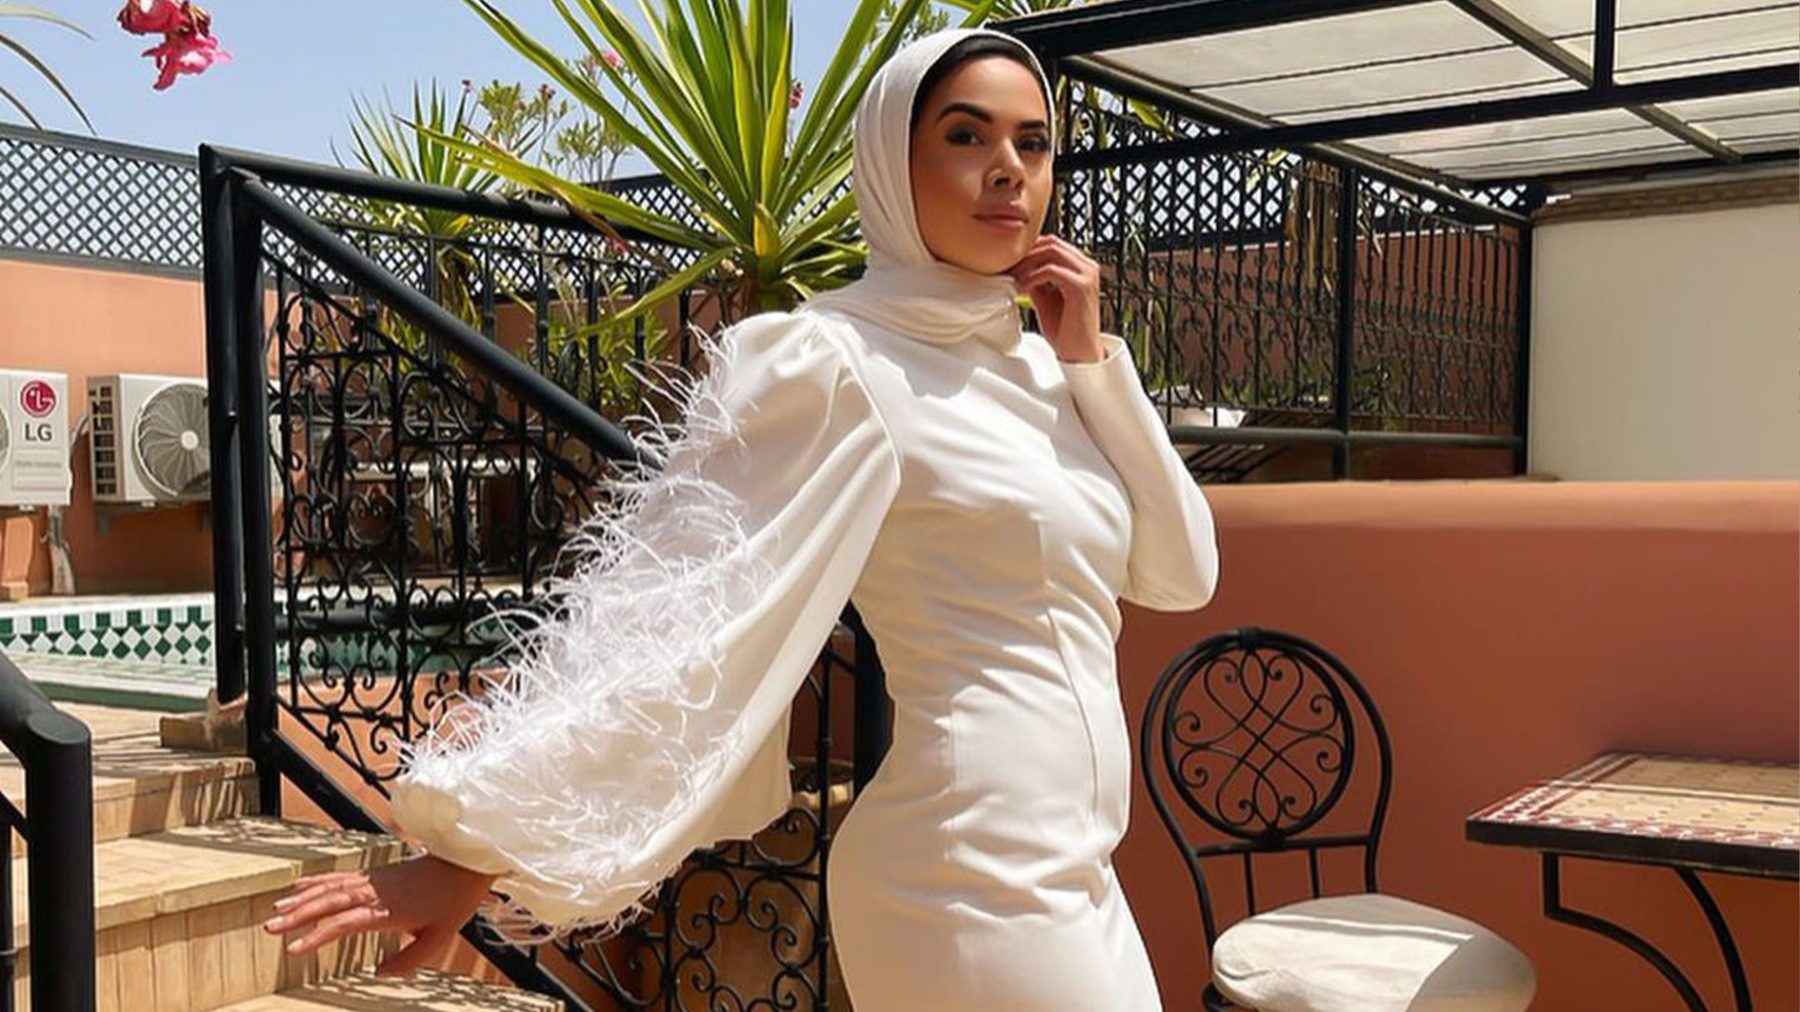 Samira sisterscee kledingmerk modest revealing